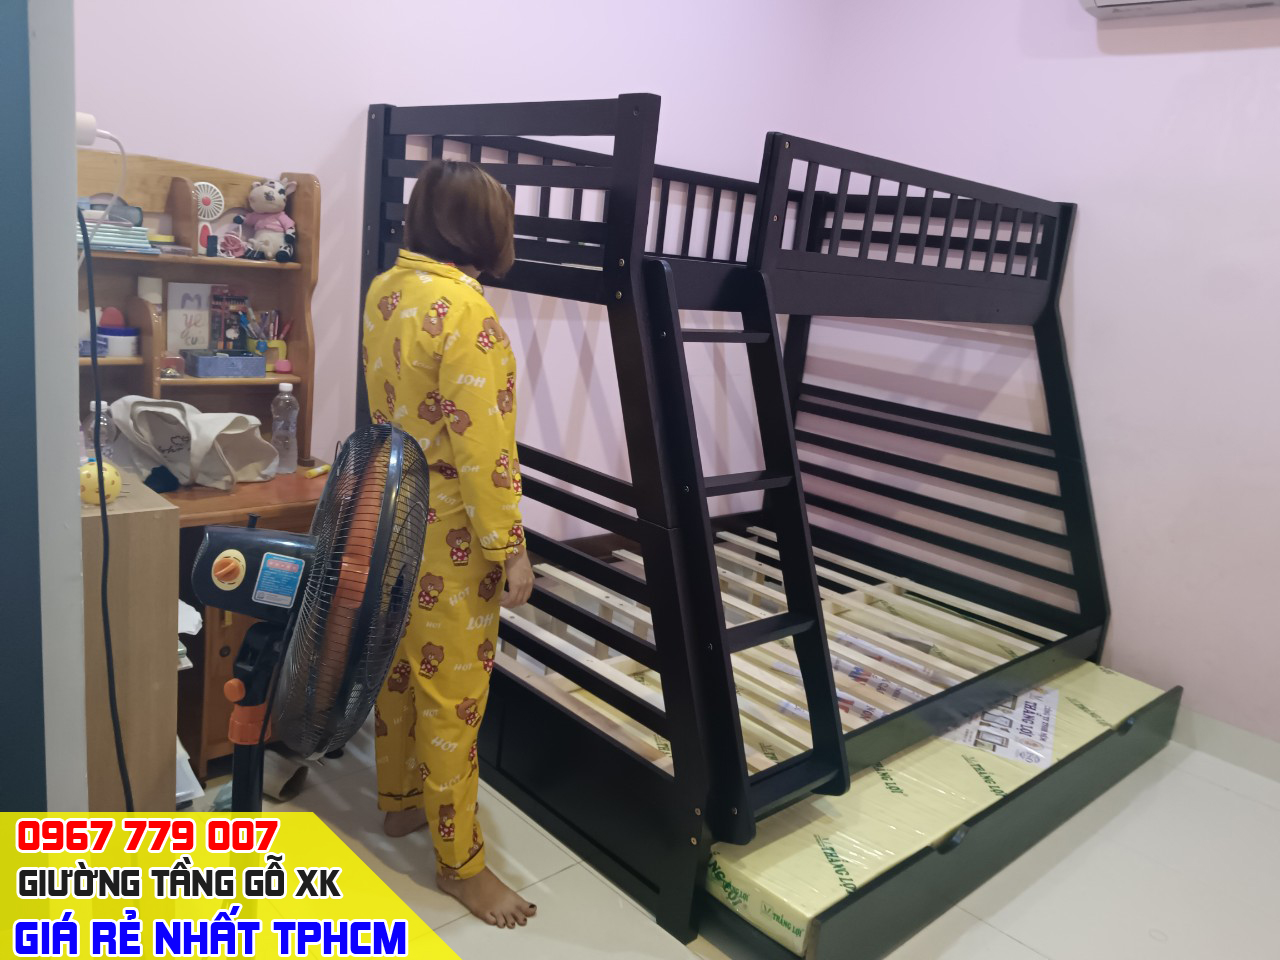 CH bán giường tầng trẻ em giá rẻ uy tín nhất Quận Gò Vấp TPHCM 24